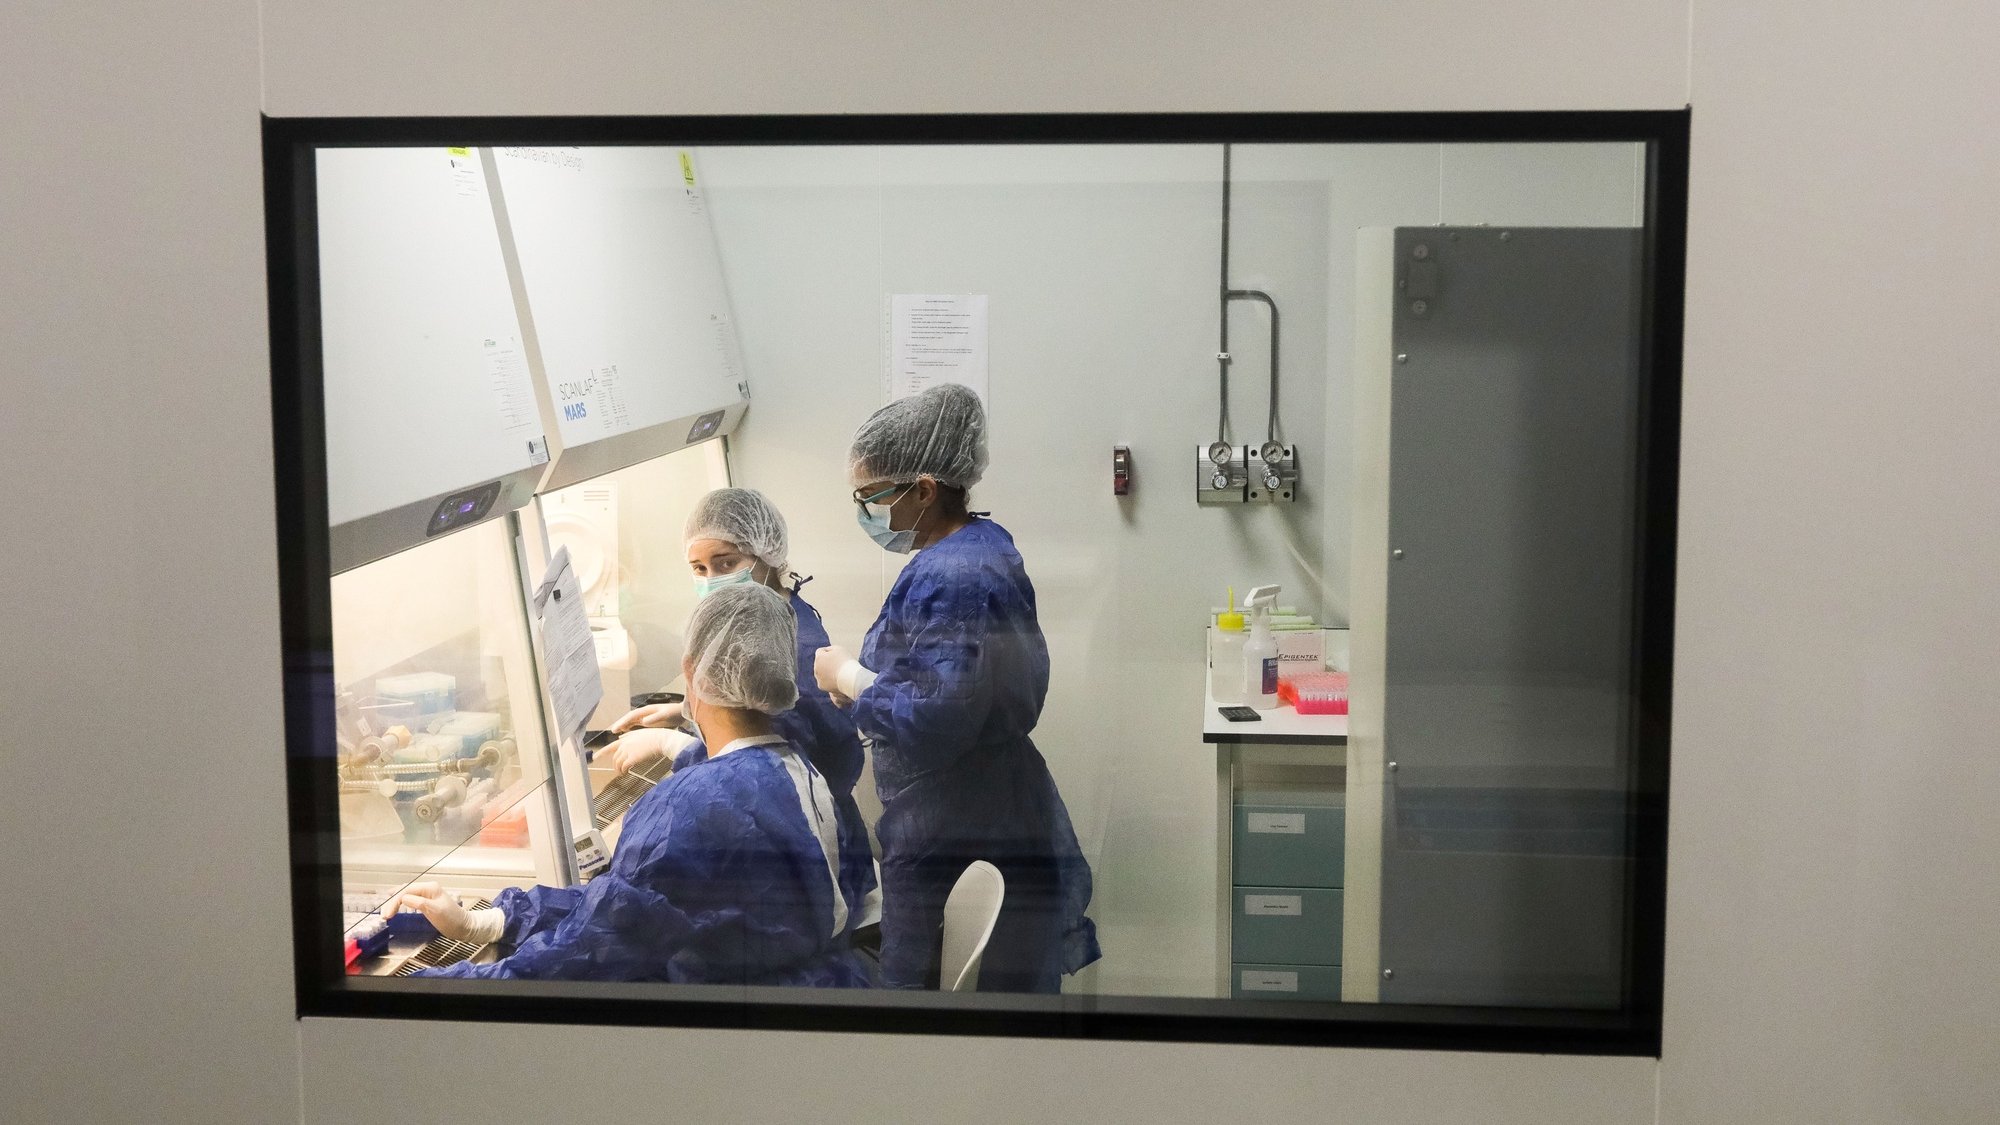 Investigadores da Universidade de Aveiro (UA), durante os trabalhos com testes de rastreio à covid-19, nos laboratórios do Instituto de Biomedicina (iBiMED), da Escola Superior de Saúde de Aveiro, onde a Universidade está a realizar testes de rastreio à covid-19, em Aveiro, 17 de abril de 2020. PAULO NOVAIS/LUSA